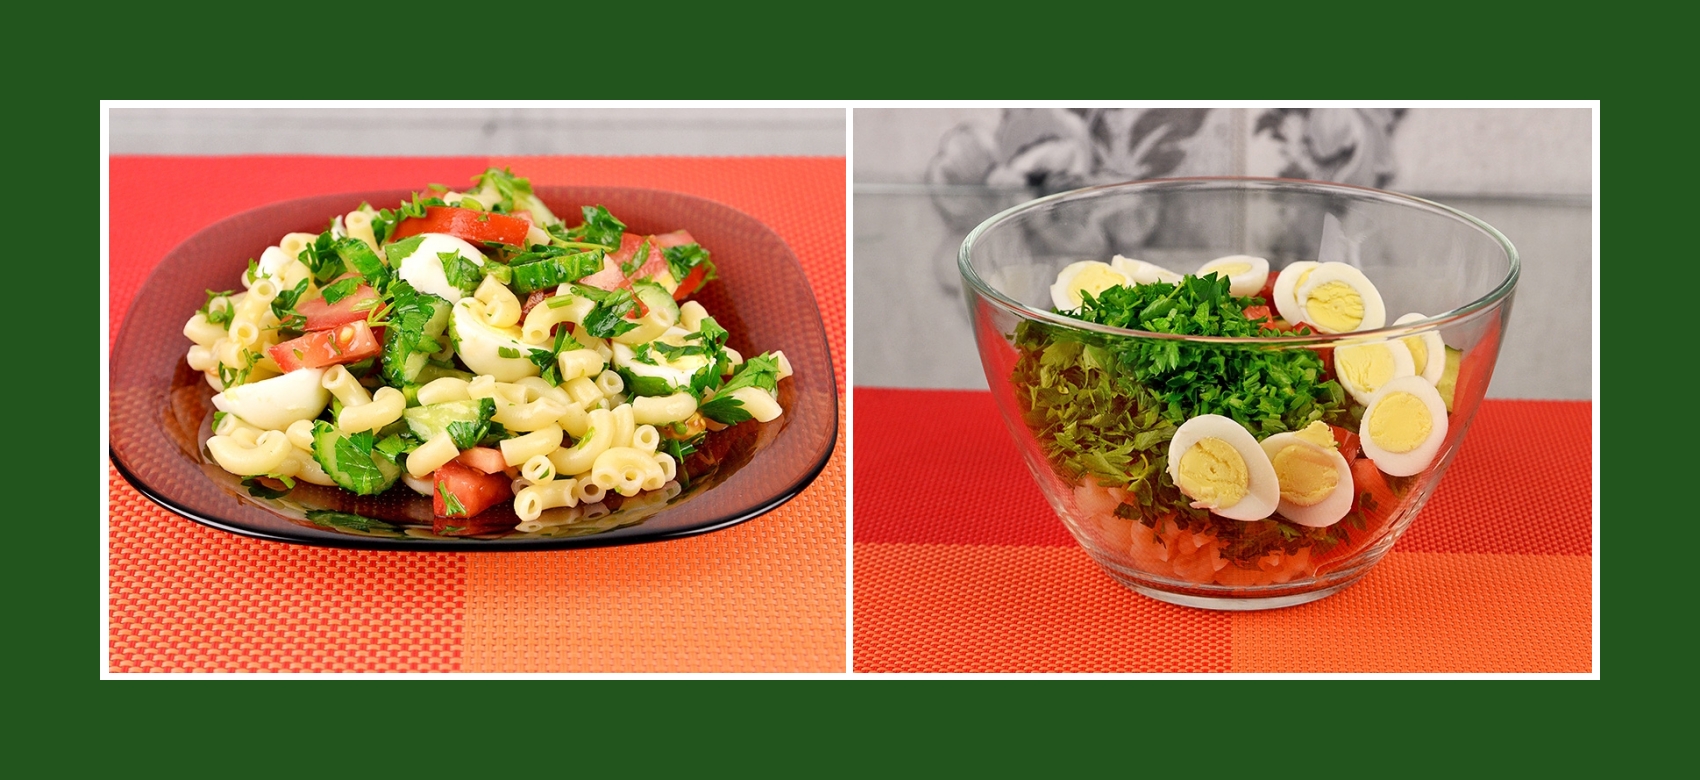 Salat mit Nudeln, Wachteleiern, frischem Kraut und Gemüse